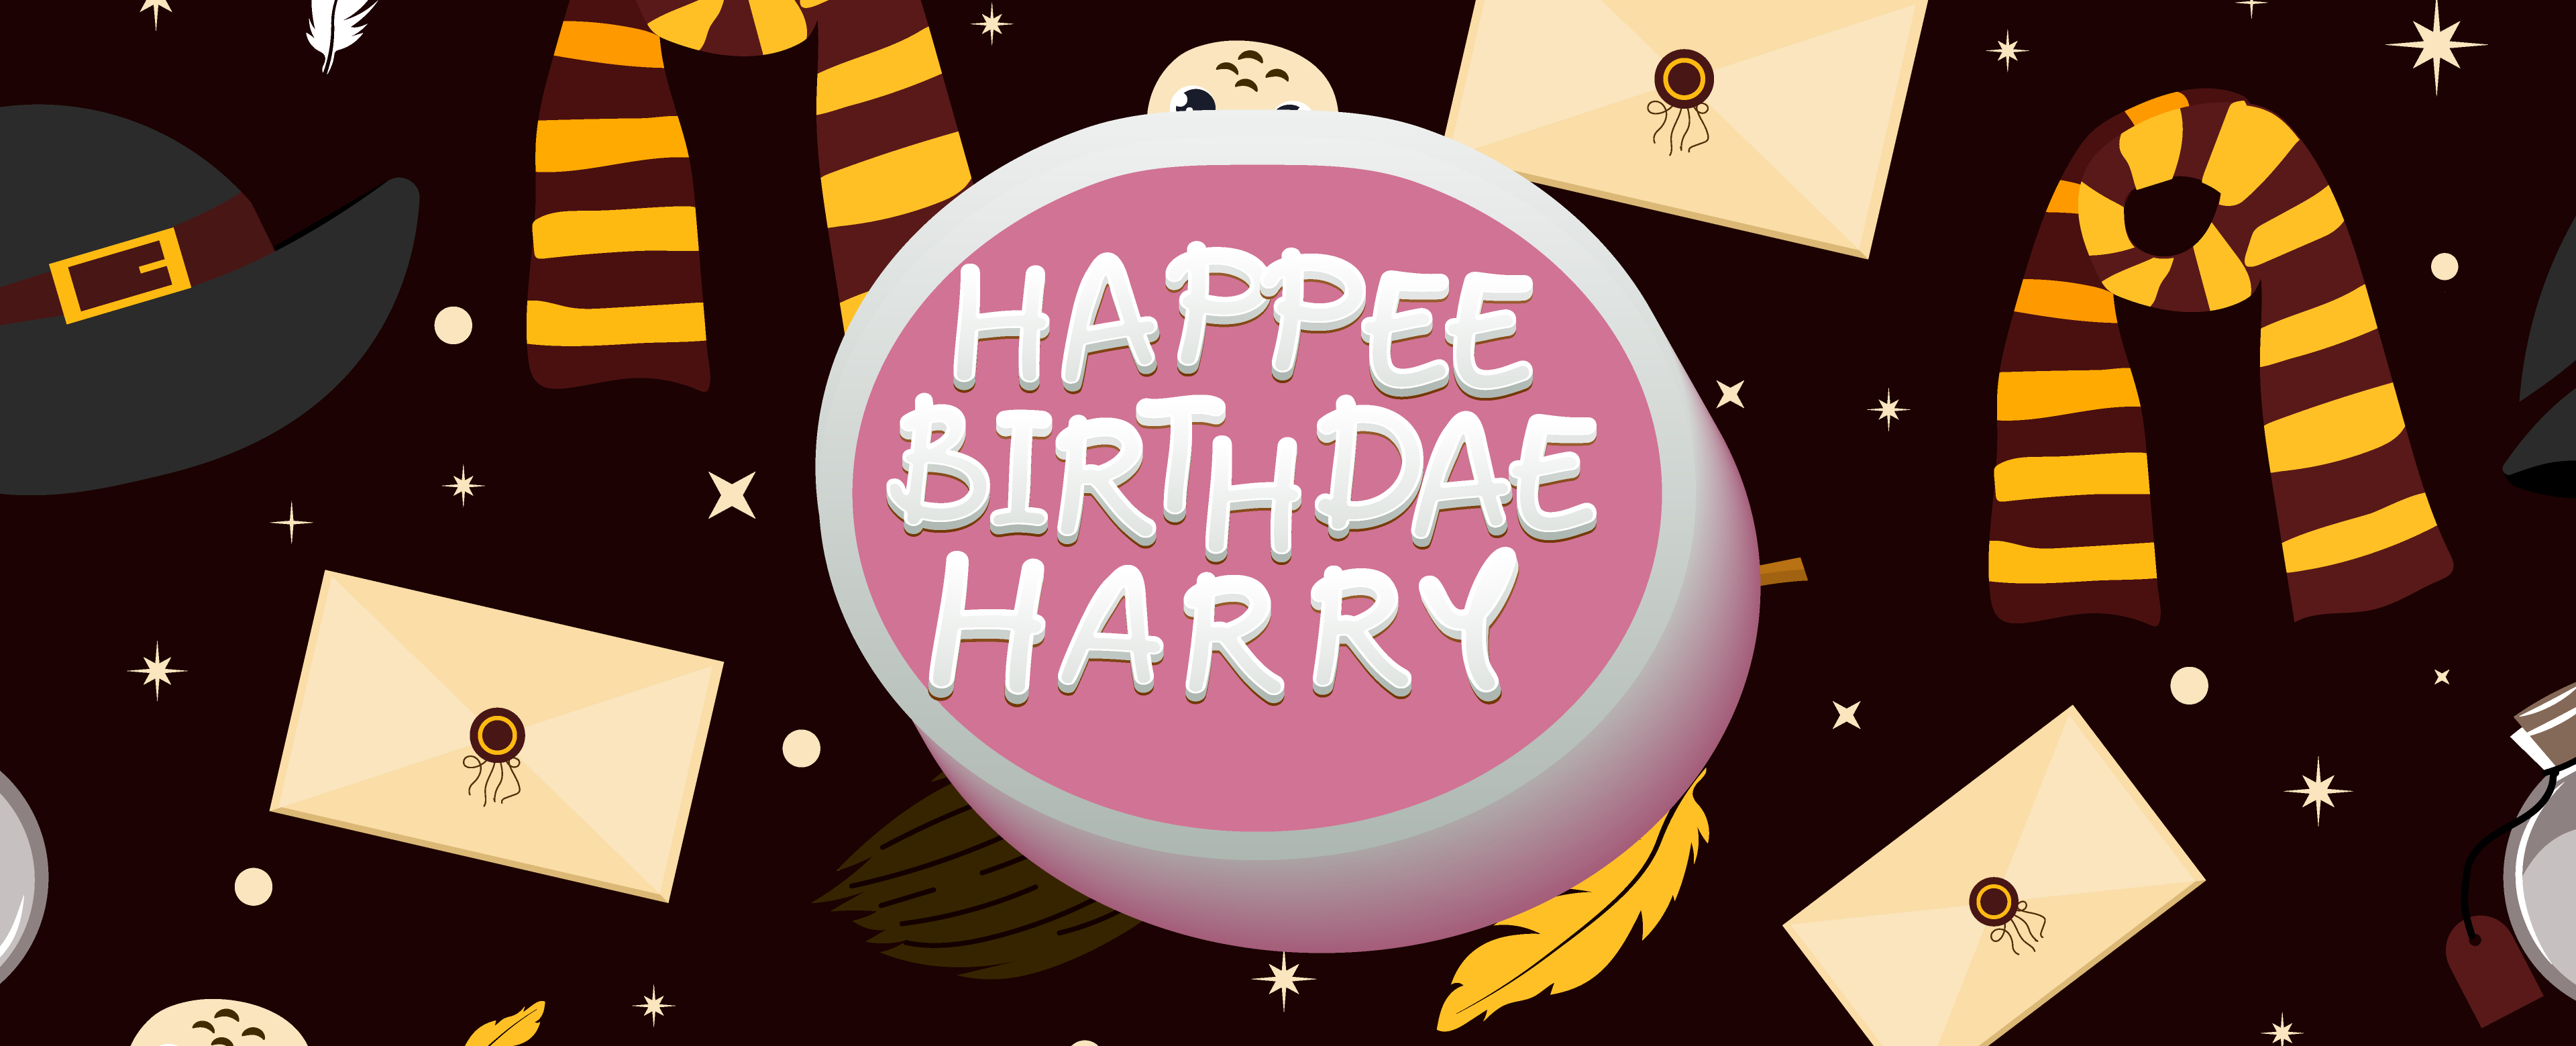 Happee Birthdae Harry